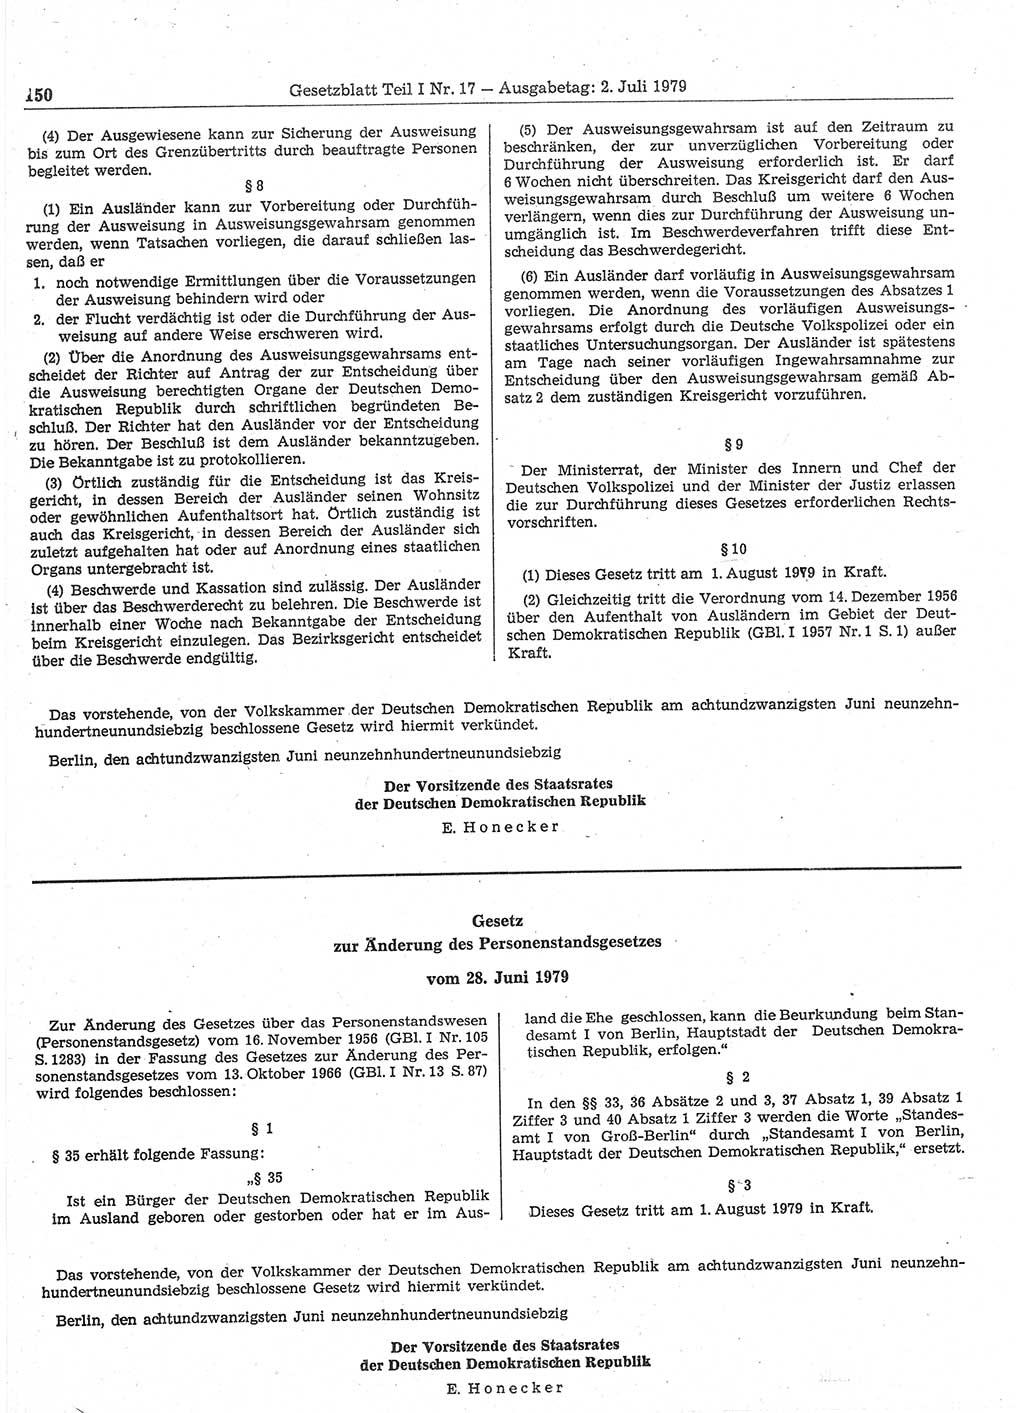 Gesetzblatt (GBl.) der Deutschen Demokratischen Republik (DDR) Teil Ⅰ 1979, Seite 150 (GBl. DDR Ⅰ 1979, S. 150)